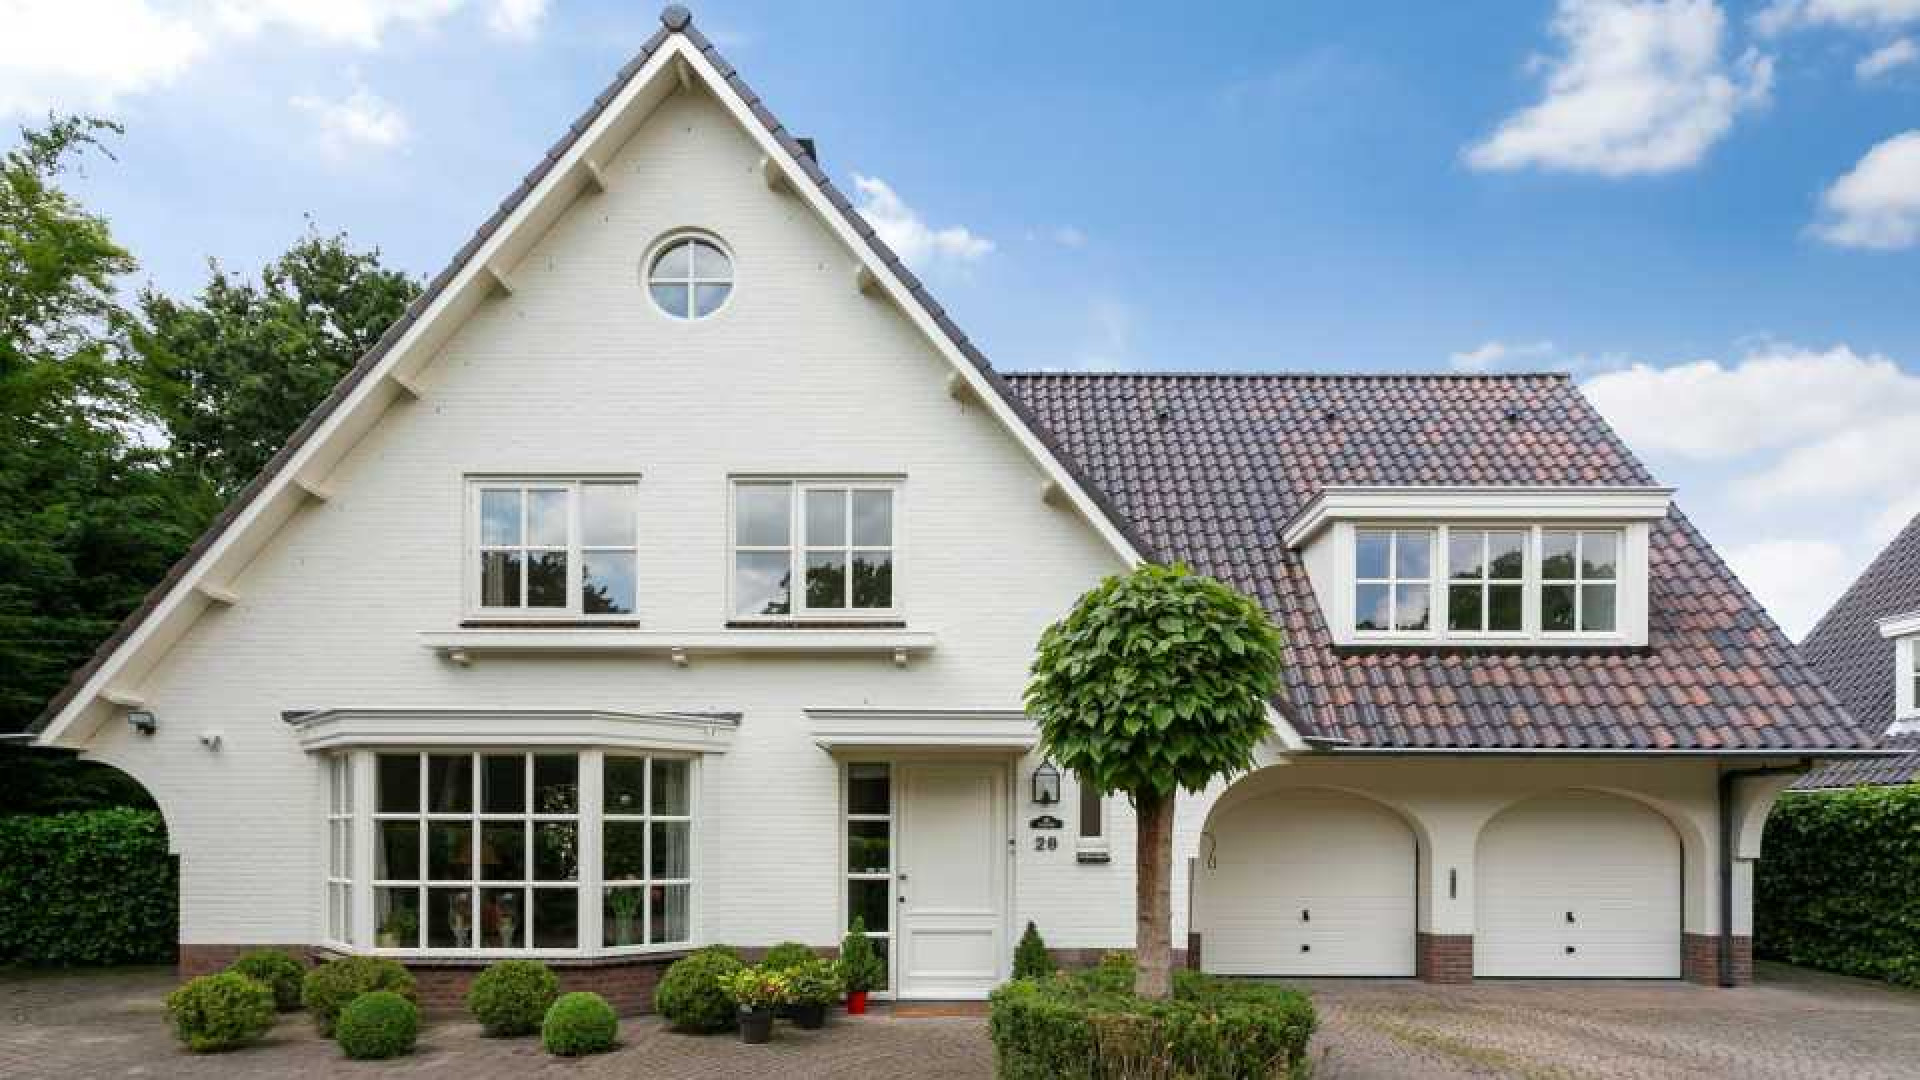 Ex vrouw van Dirk Kuijt koopt net als Dirk luxe villa op landgoed in Noordwijk. Zie foto's 5